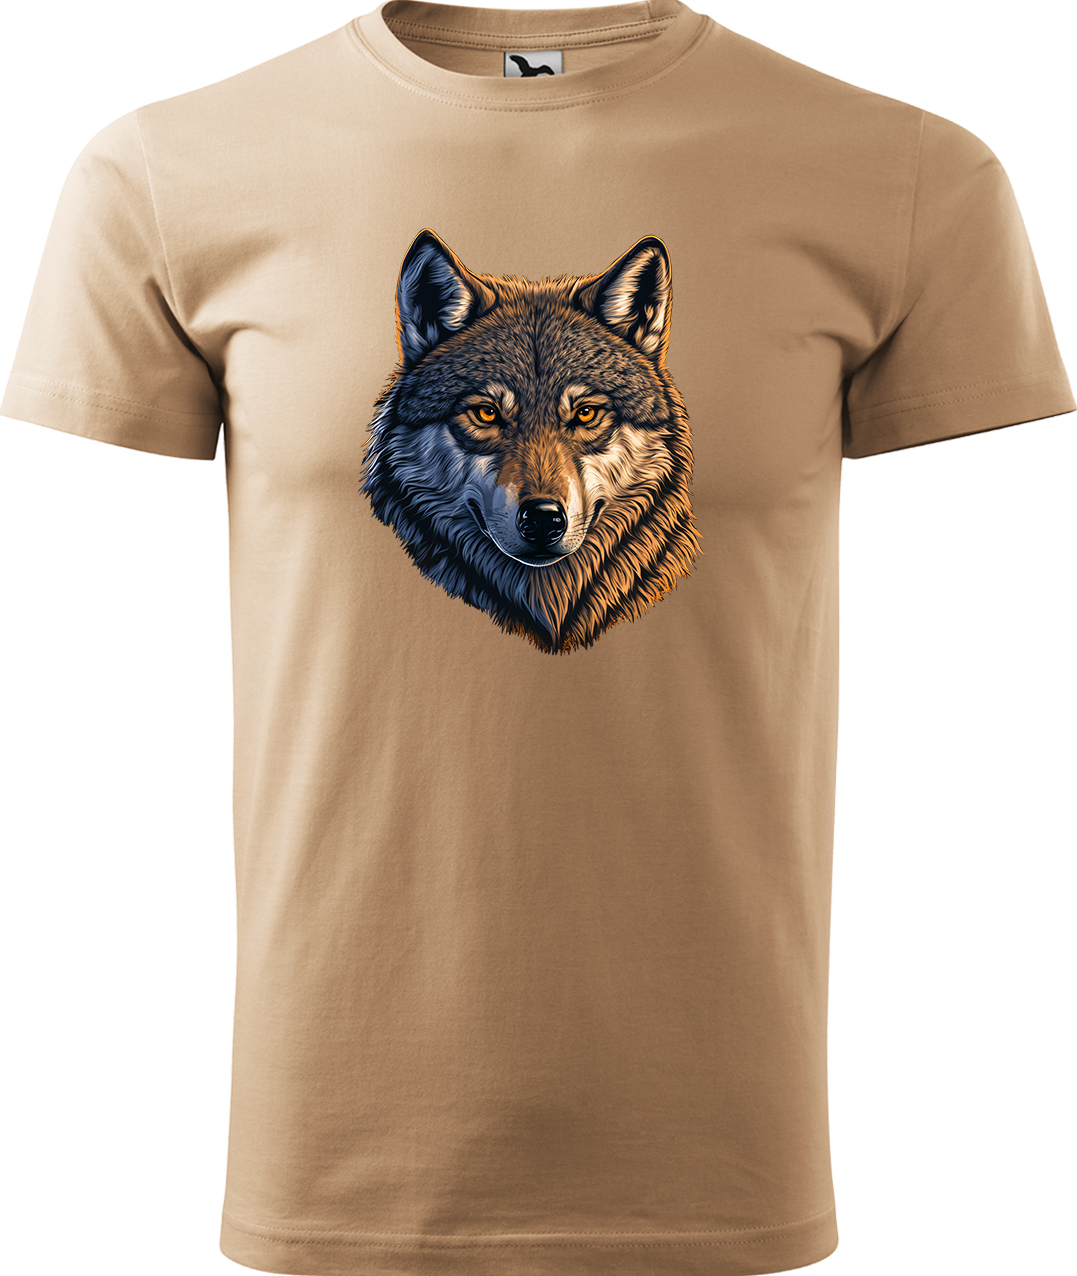 Pánské tričko s vlkem - Hlava vlka Velikost: L, Barva: Písková (08), Střih: pánský